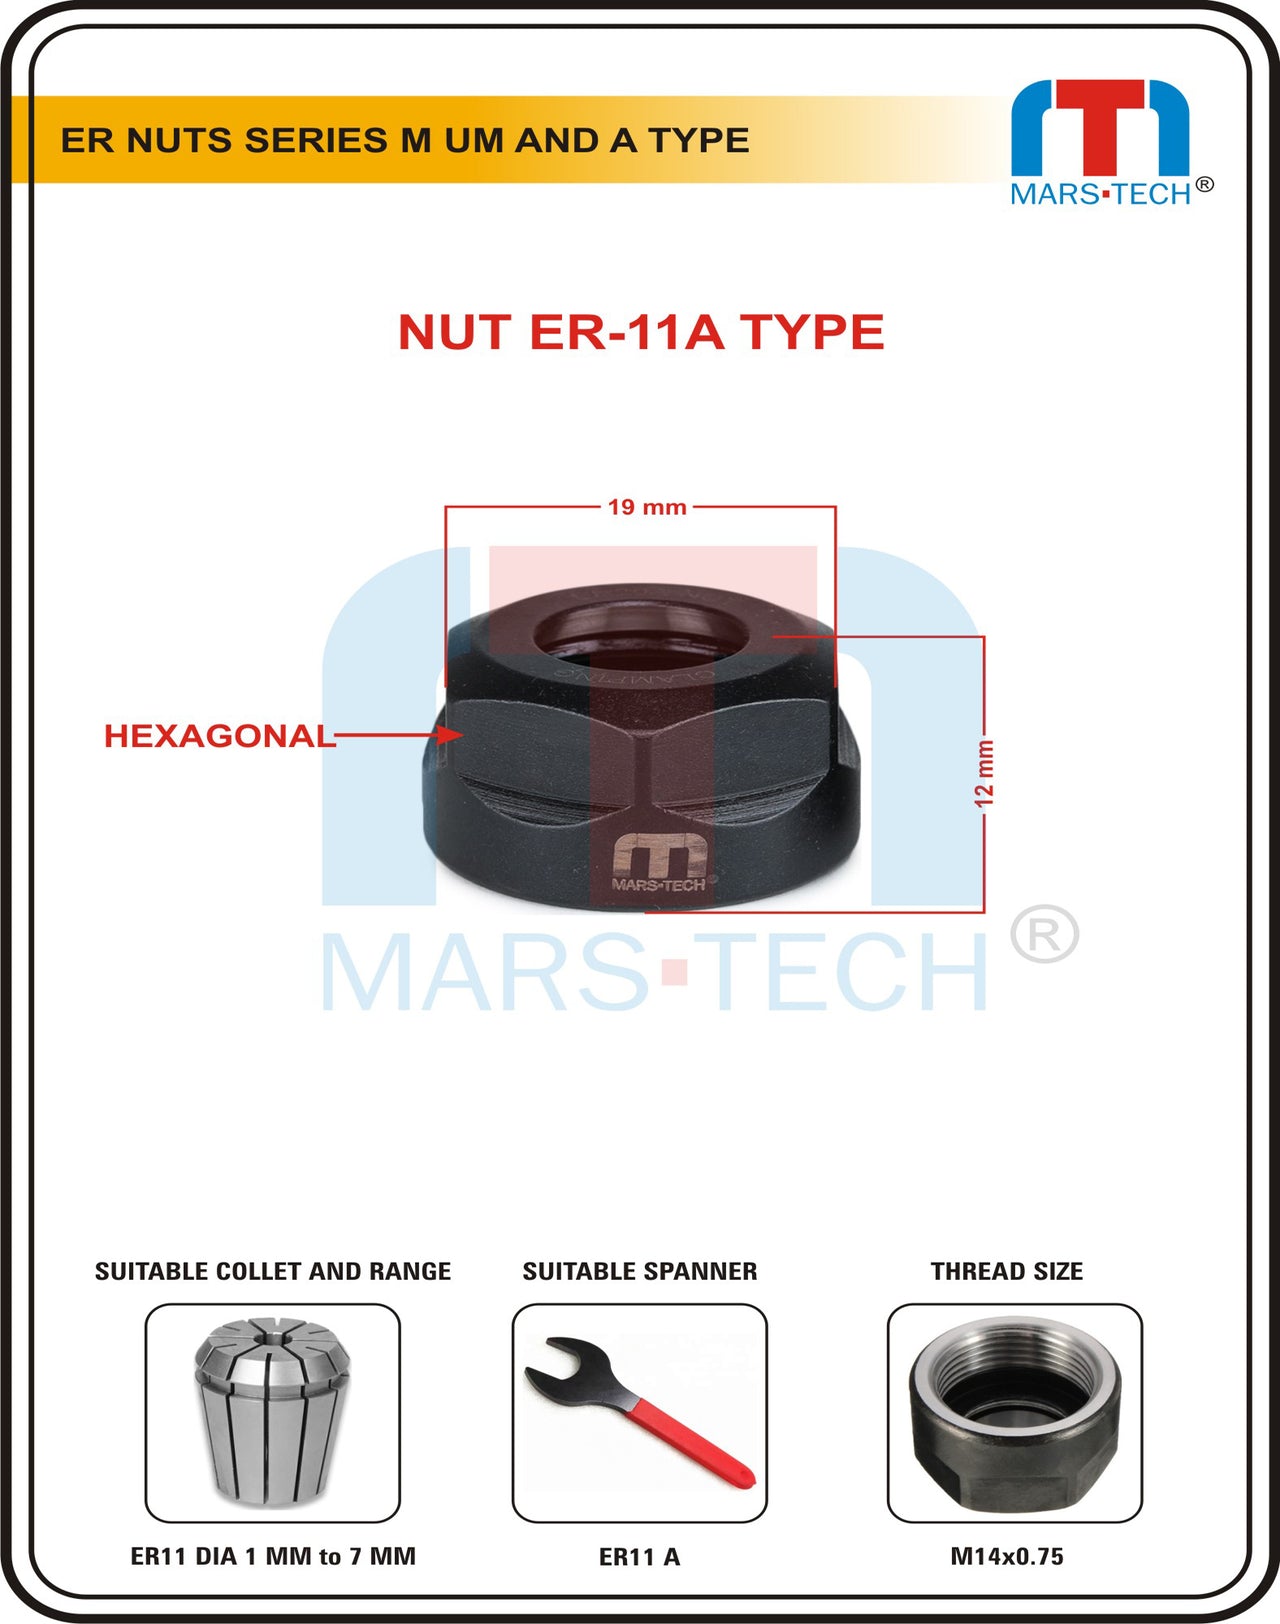 Mars-Tech ER Nut ER11